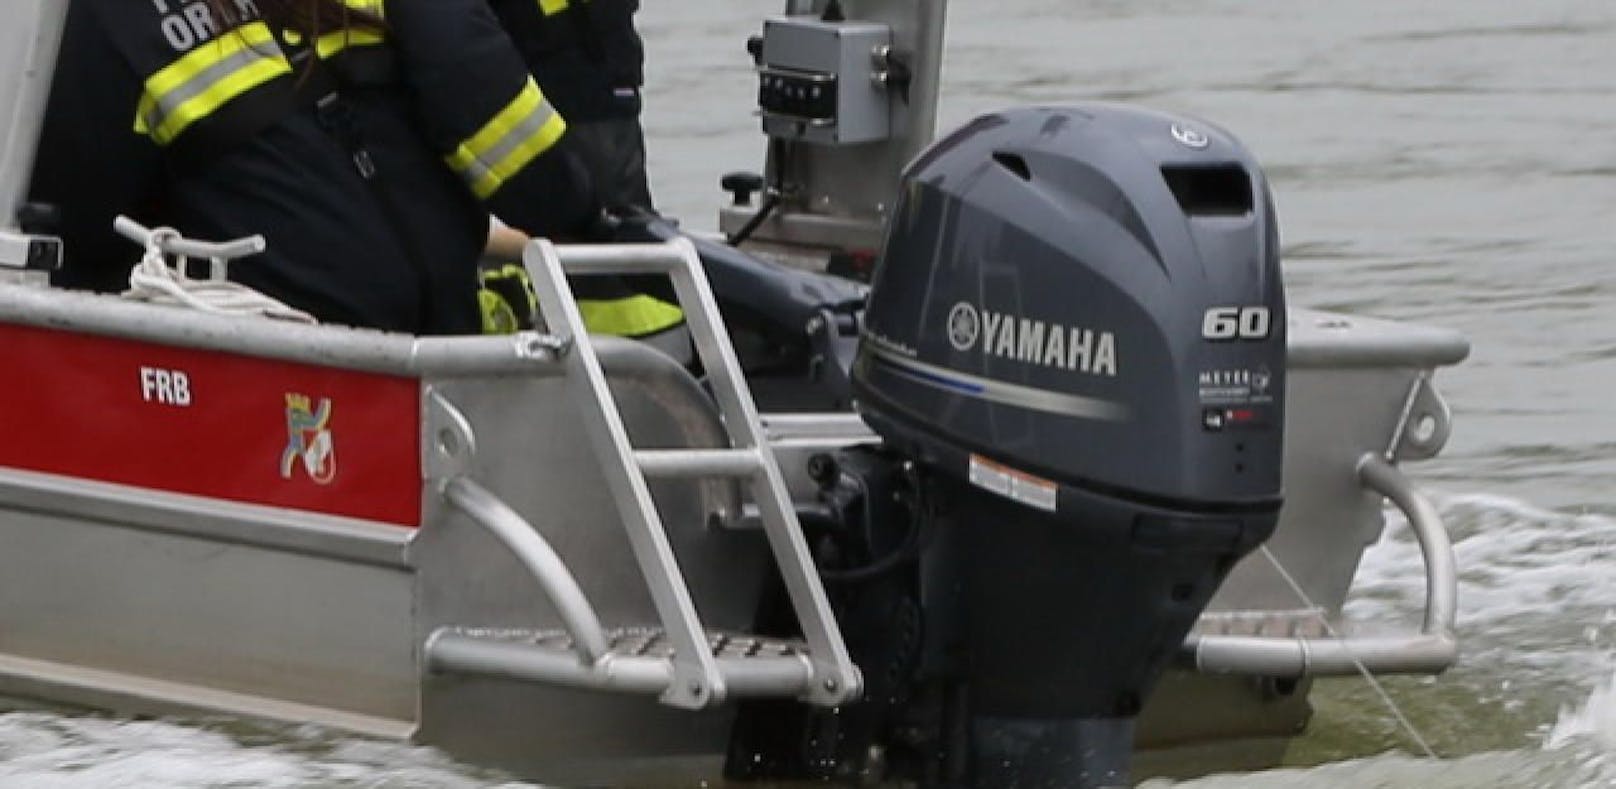 Motor von Rettungsboot schon zwei Mal gestohlen